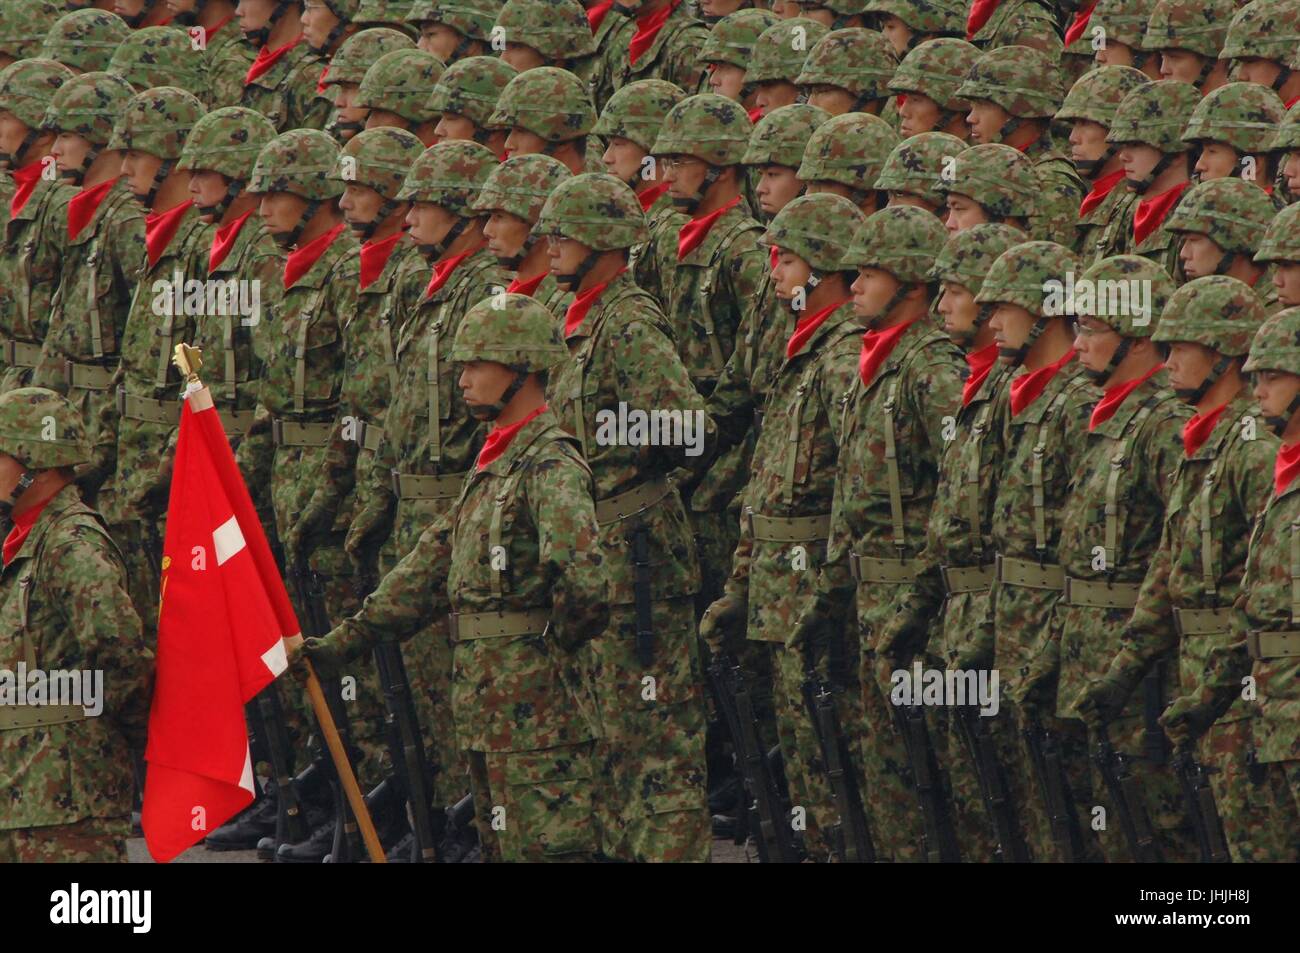 Japanische Self-Defense Force Soldaten marschieren in Formation während der jährlichen Armed Forces Day Militärparade auf der Basis von Asaka 24. Oktober 2010 in der Nähe von Tokio, Japan.    (Foto von JSDF über Planetpix) Stockfoto